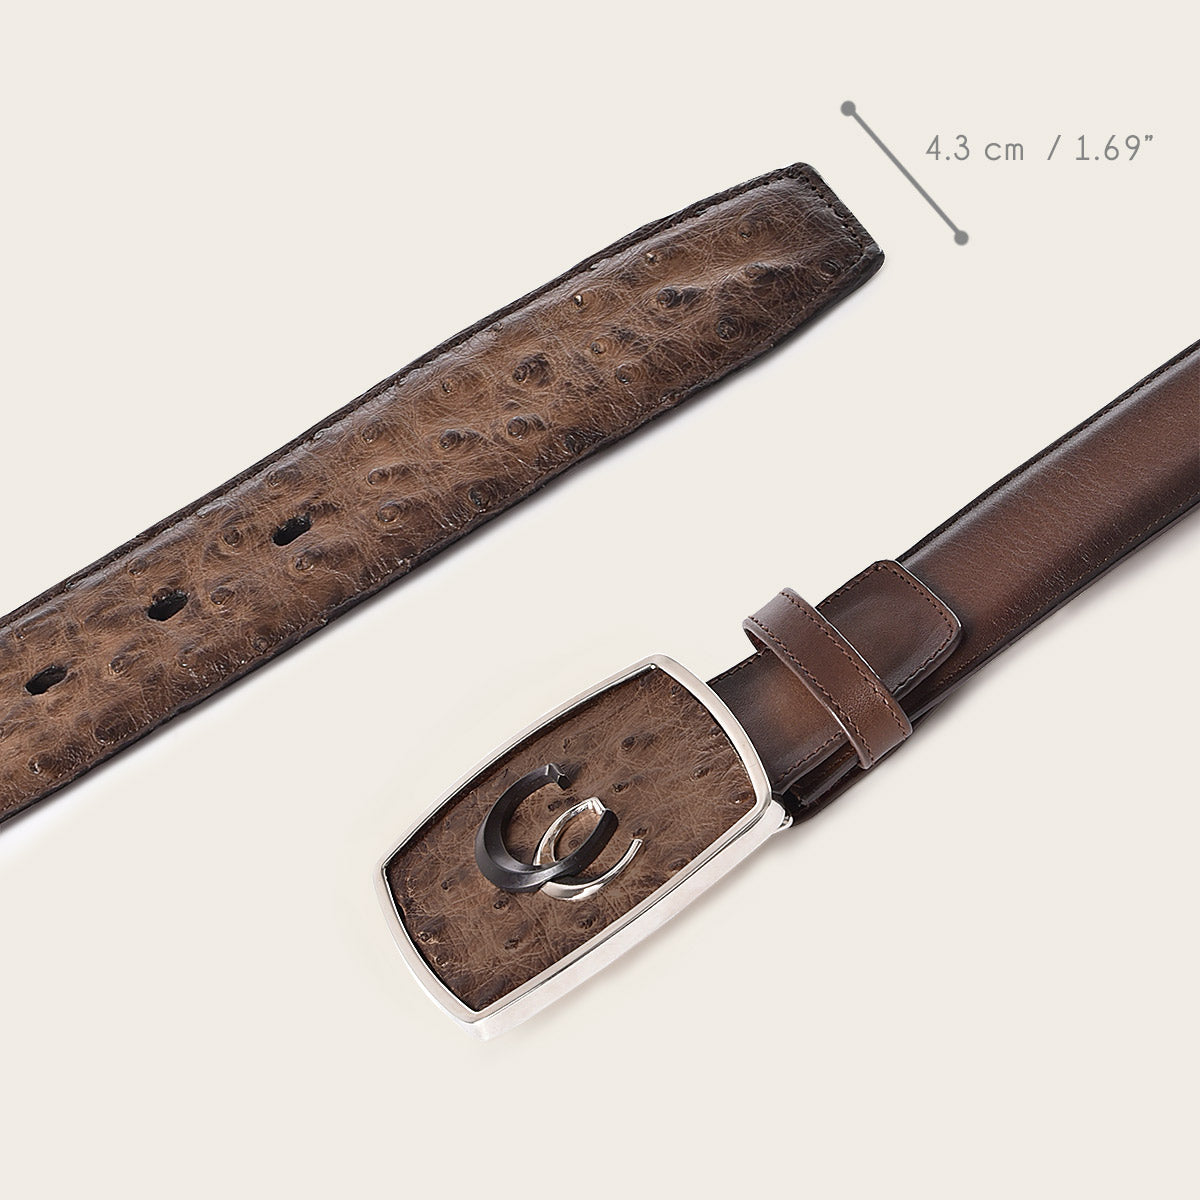 Cinturón western de piel exótica color café pintado a mano con doble inserción metálica